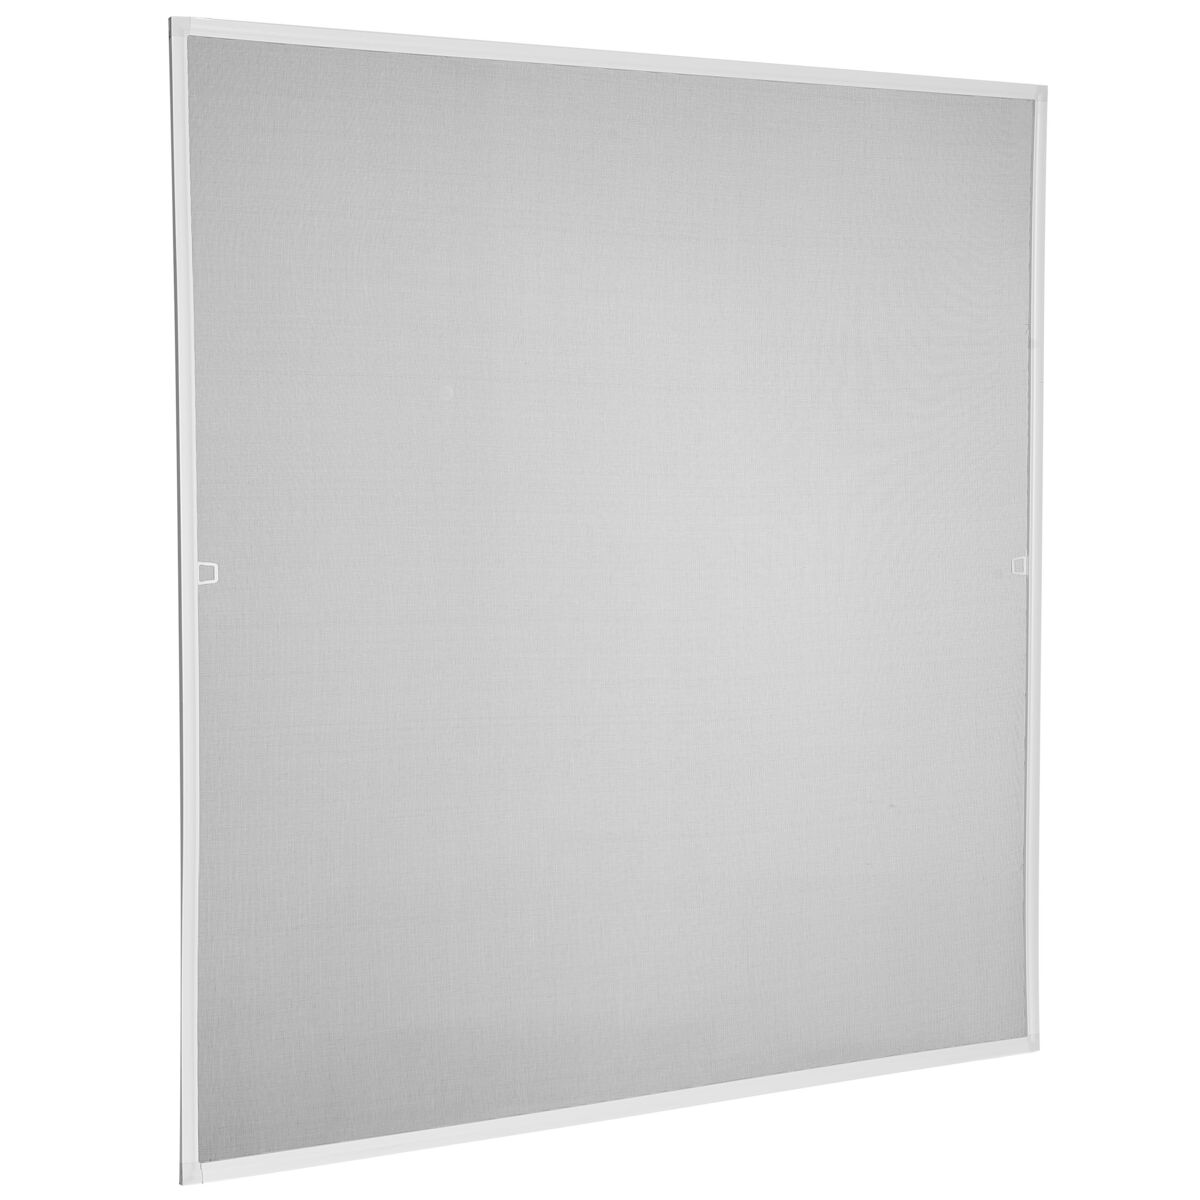 Moskitiera z białą ramą na okno 100x100 cm czarna tkanina Artens